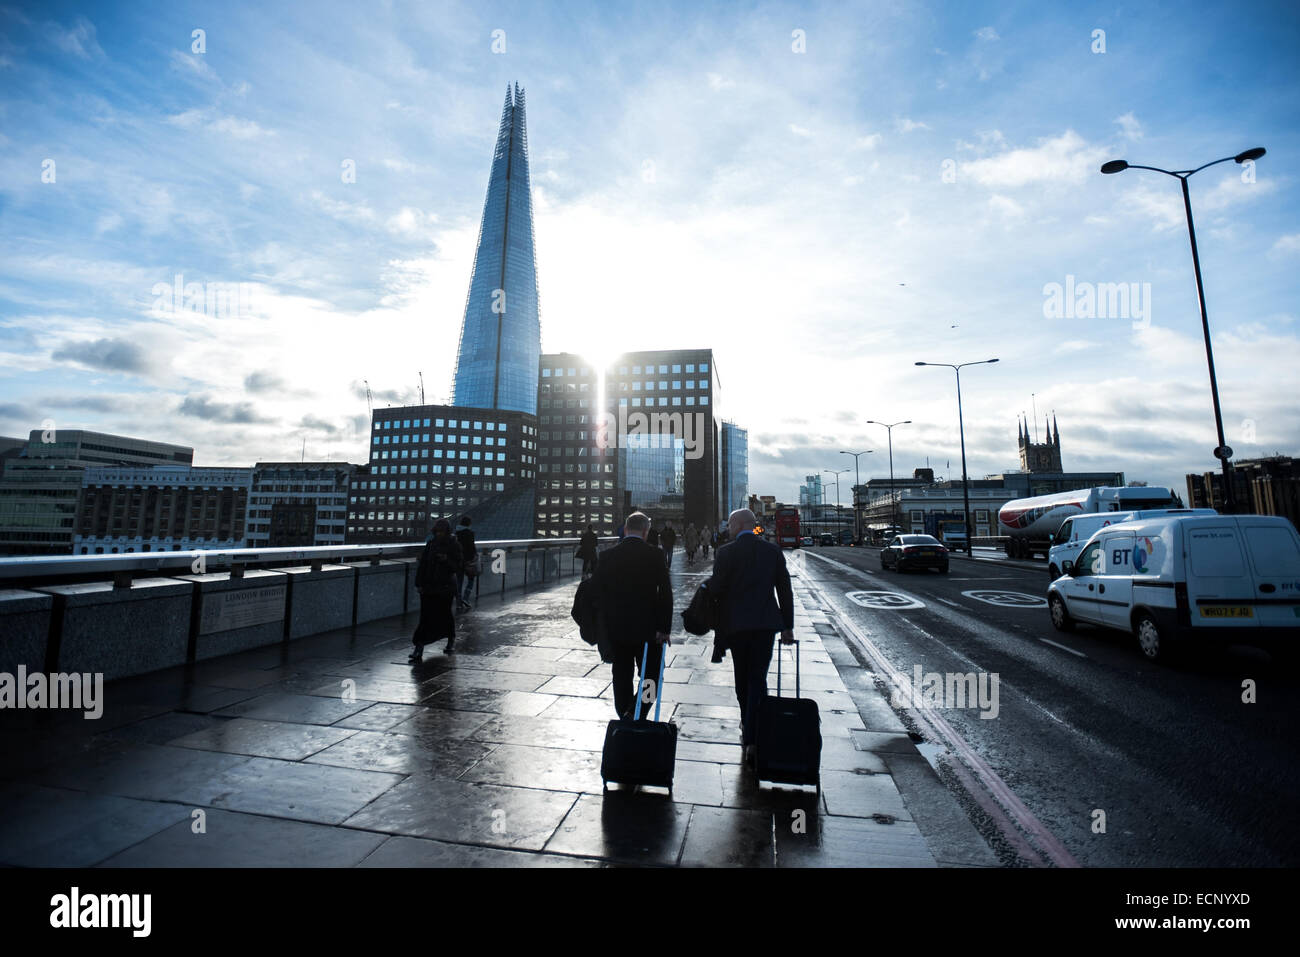 Londres, Royaume-Uni - 17 décembre 2014 : avec les chariots du Pont de Londres que le soleil brille derrière les bâtiments et le tesson Banque D'Images